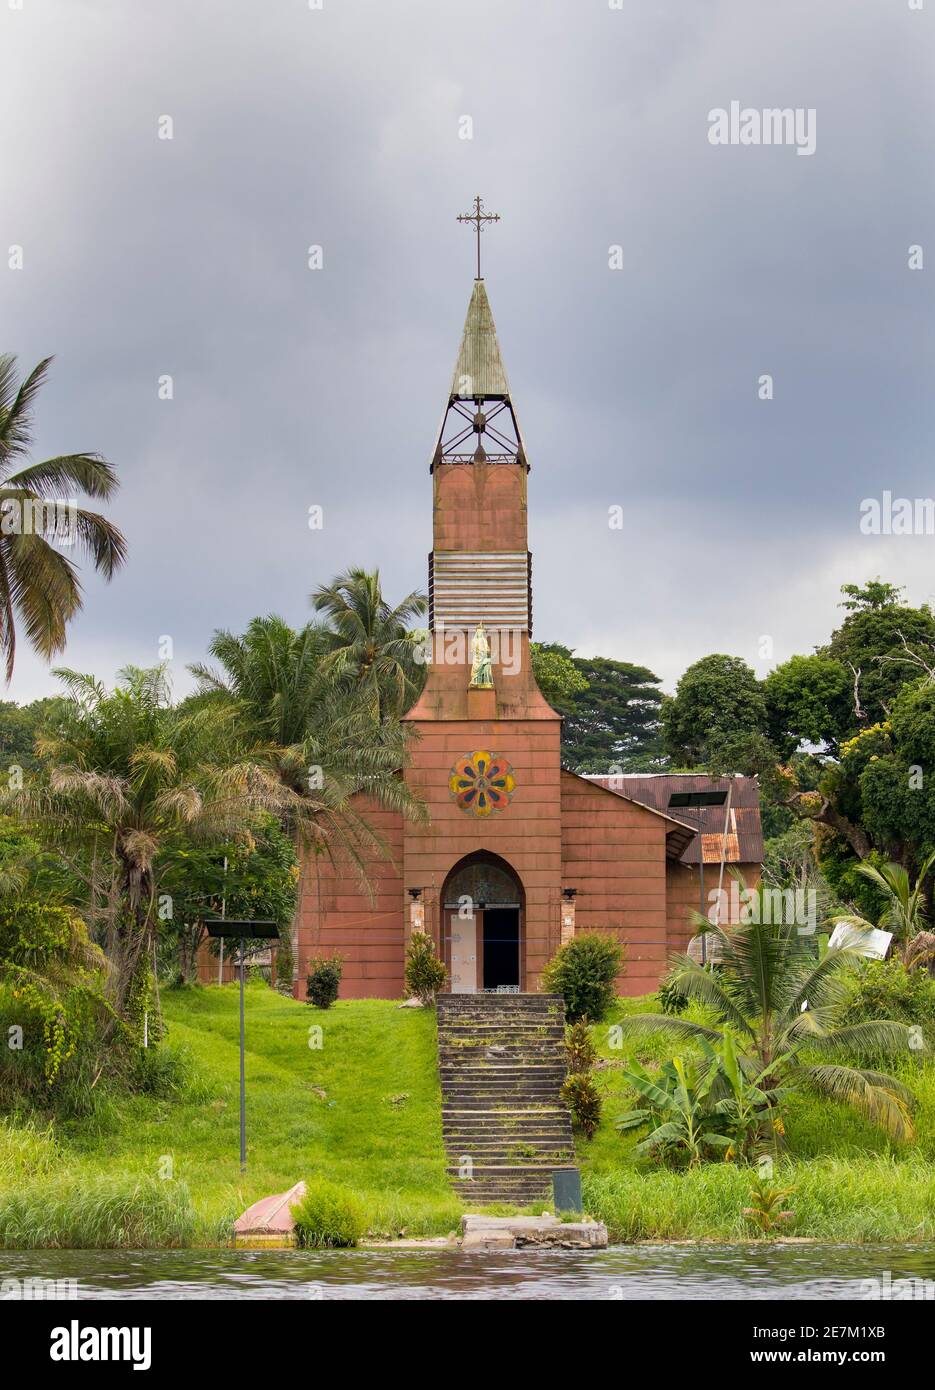 St Anne's Mission, entworfen und geliefert von Gustav Eiffel im Jahr 1889, in der Nähe von Omboue, Fernan Vaz Lagune, Gabun, Zentralafrika. Stockfoto